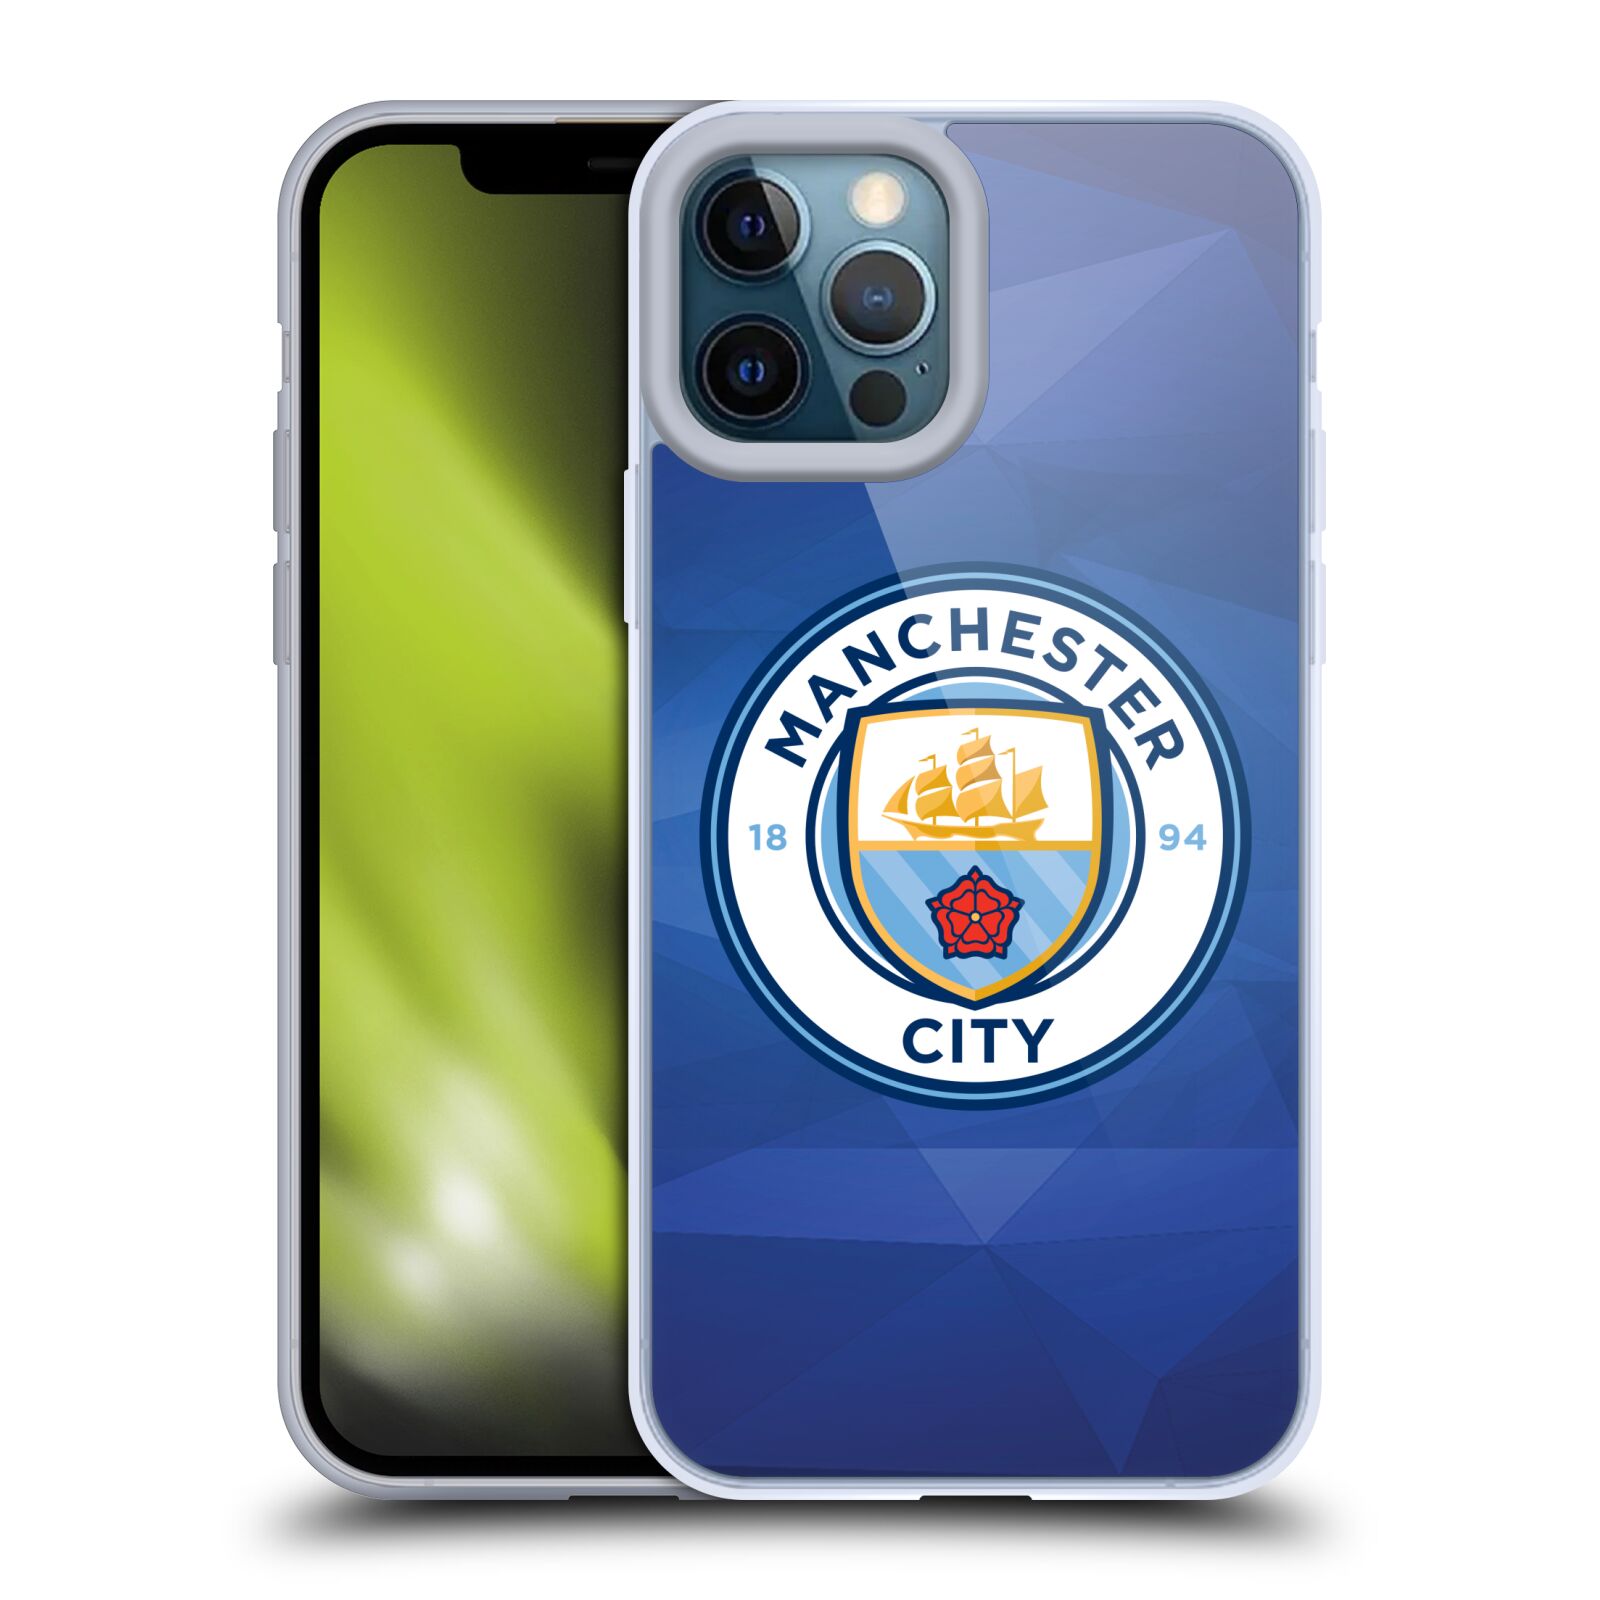 Silikonové pouzdro na mobil Apple iPhone 12 Pro Max - Head Case - Manchester City FC - Modré nové logo